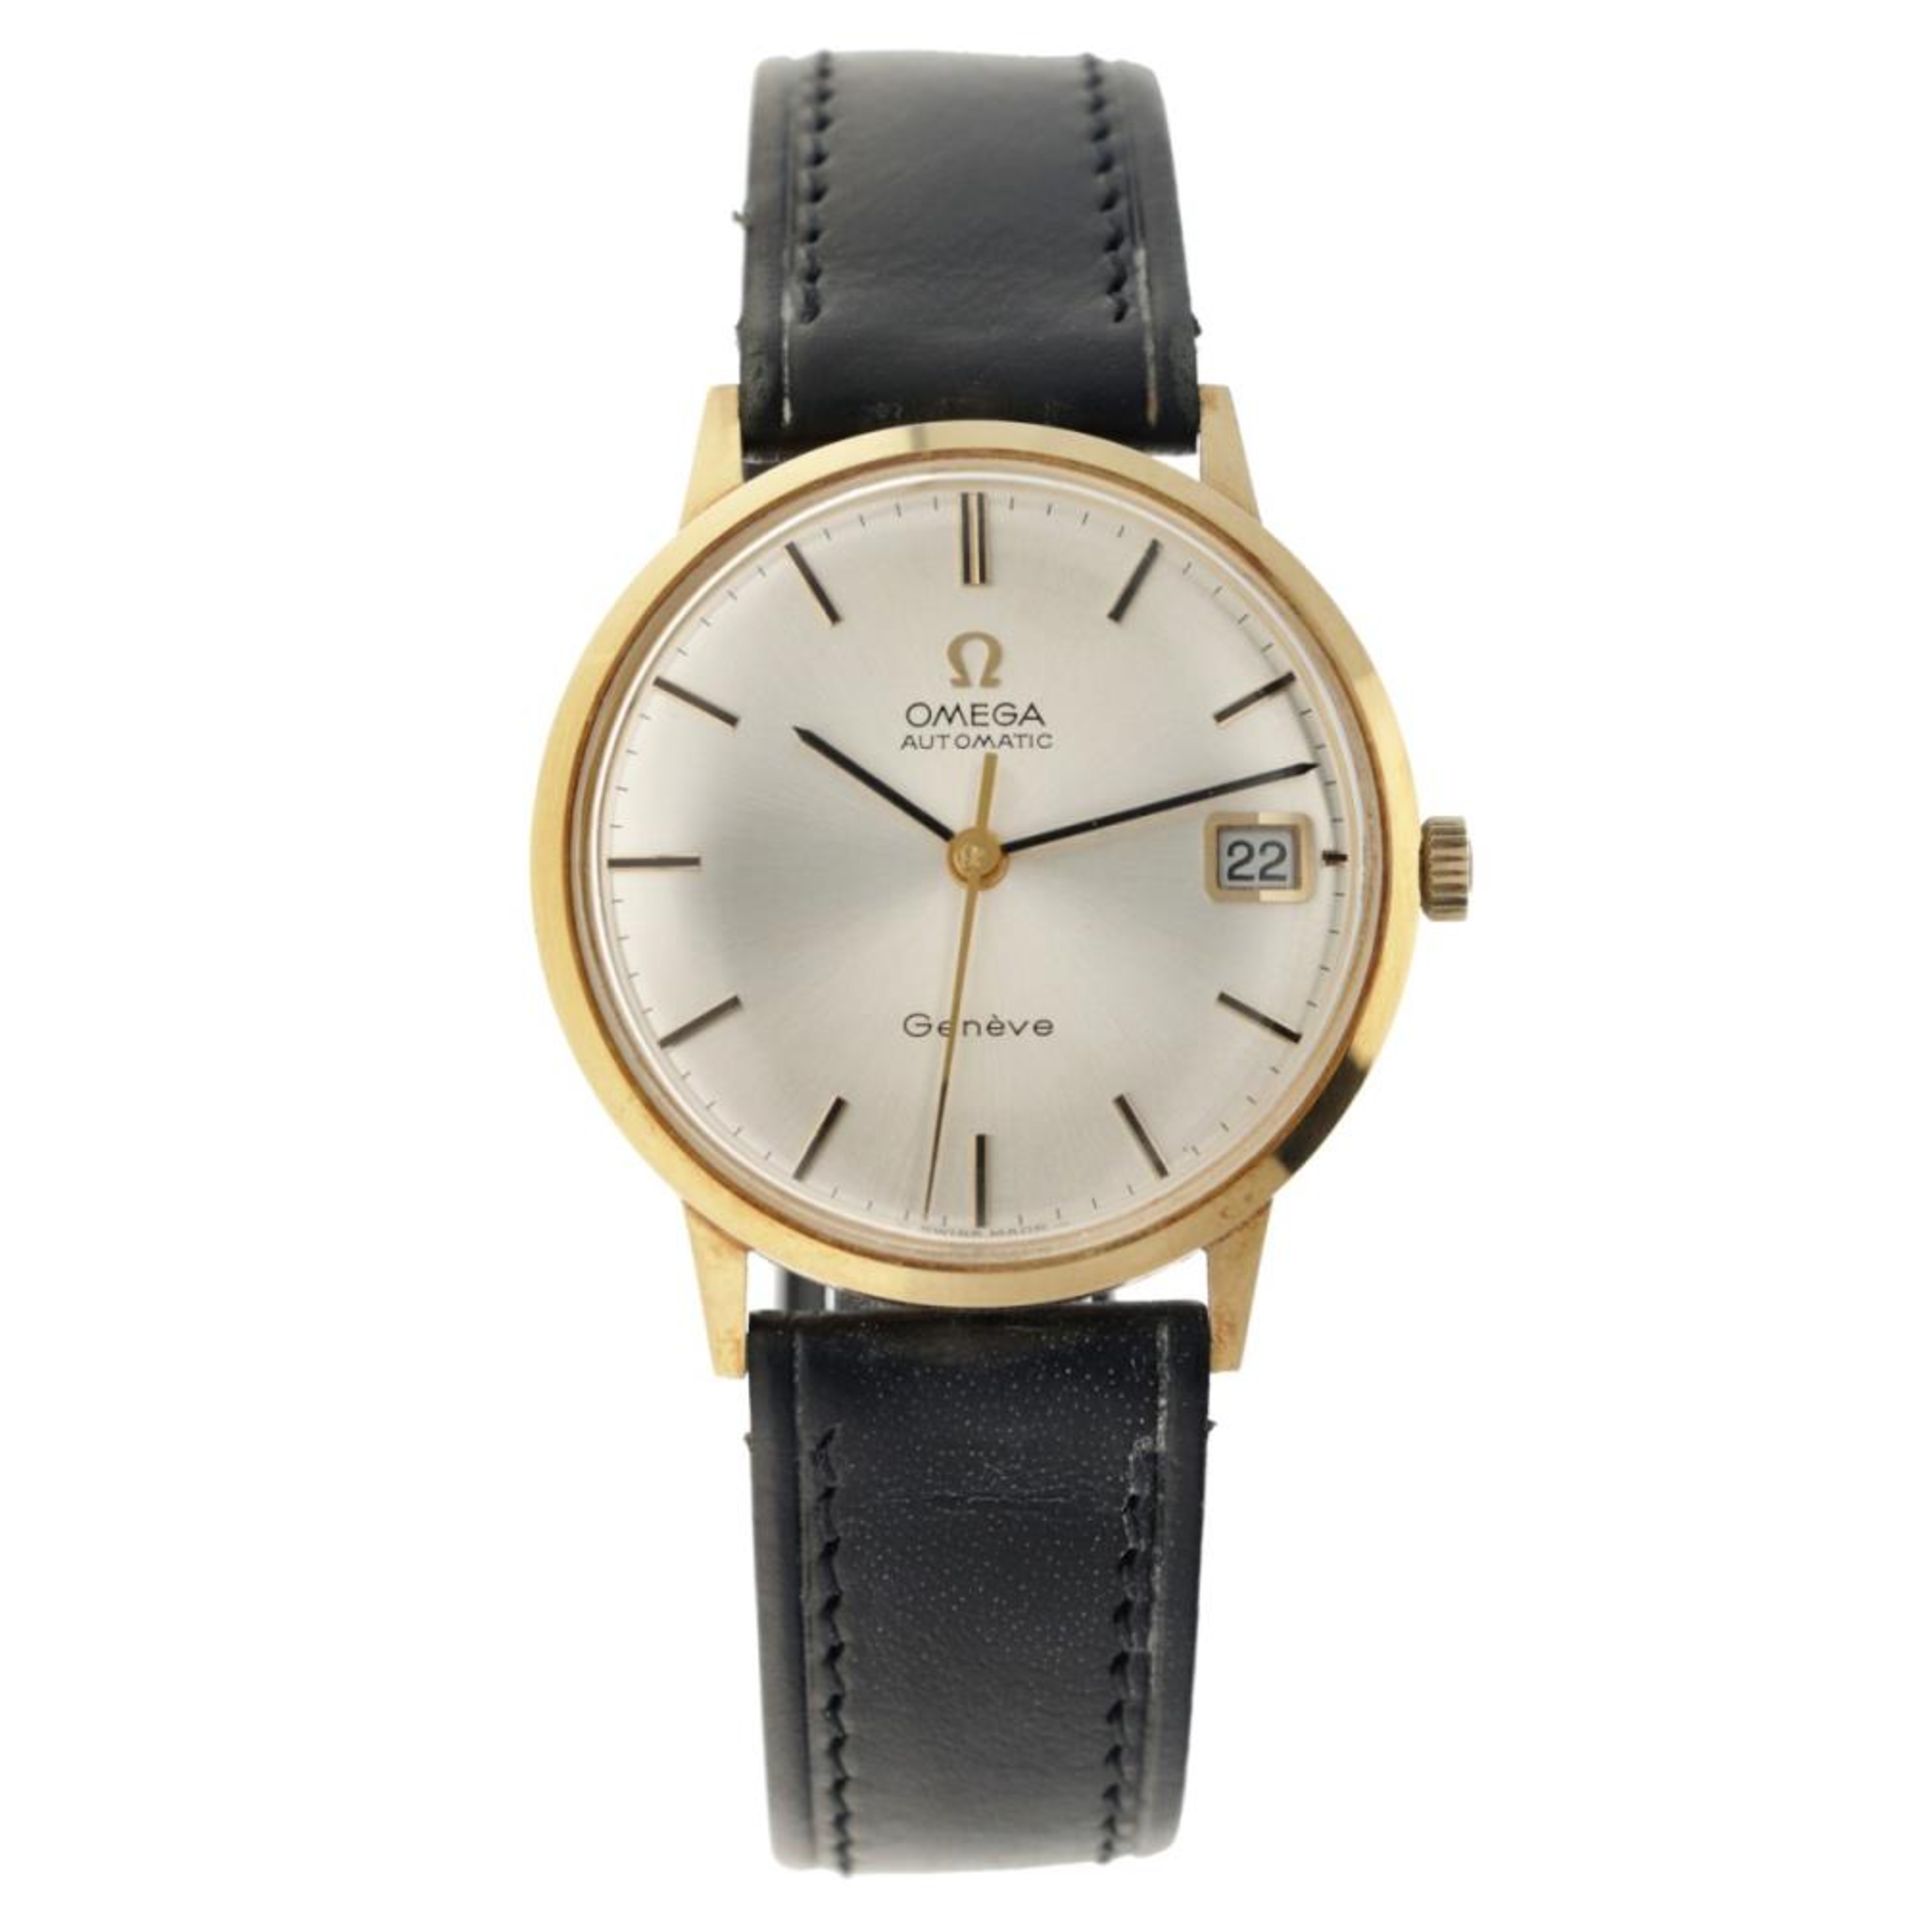 Omega Genève 162 030 - Men's watch - approx. 1971.